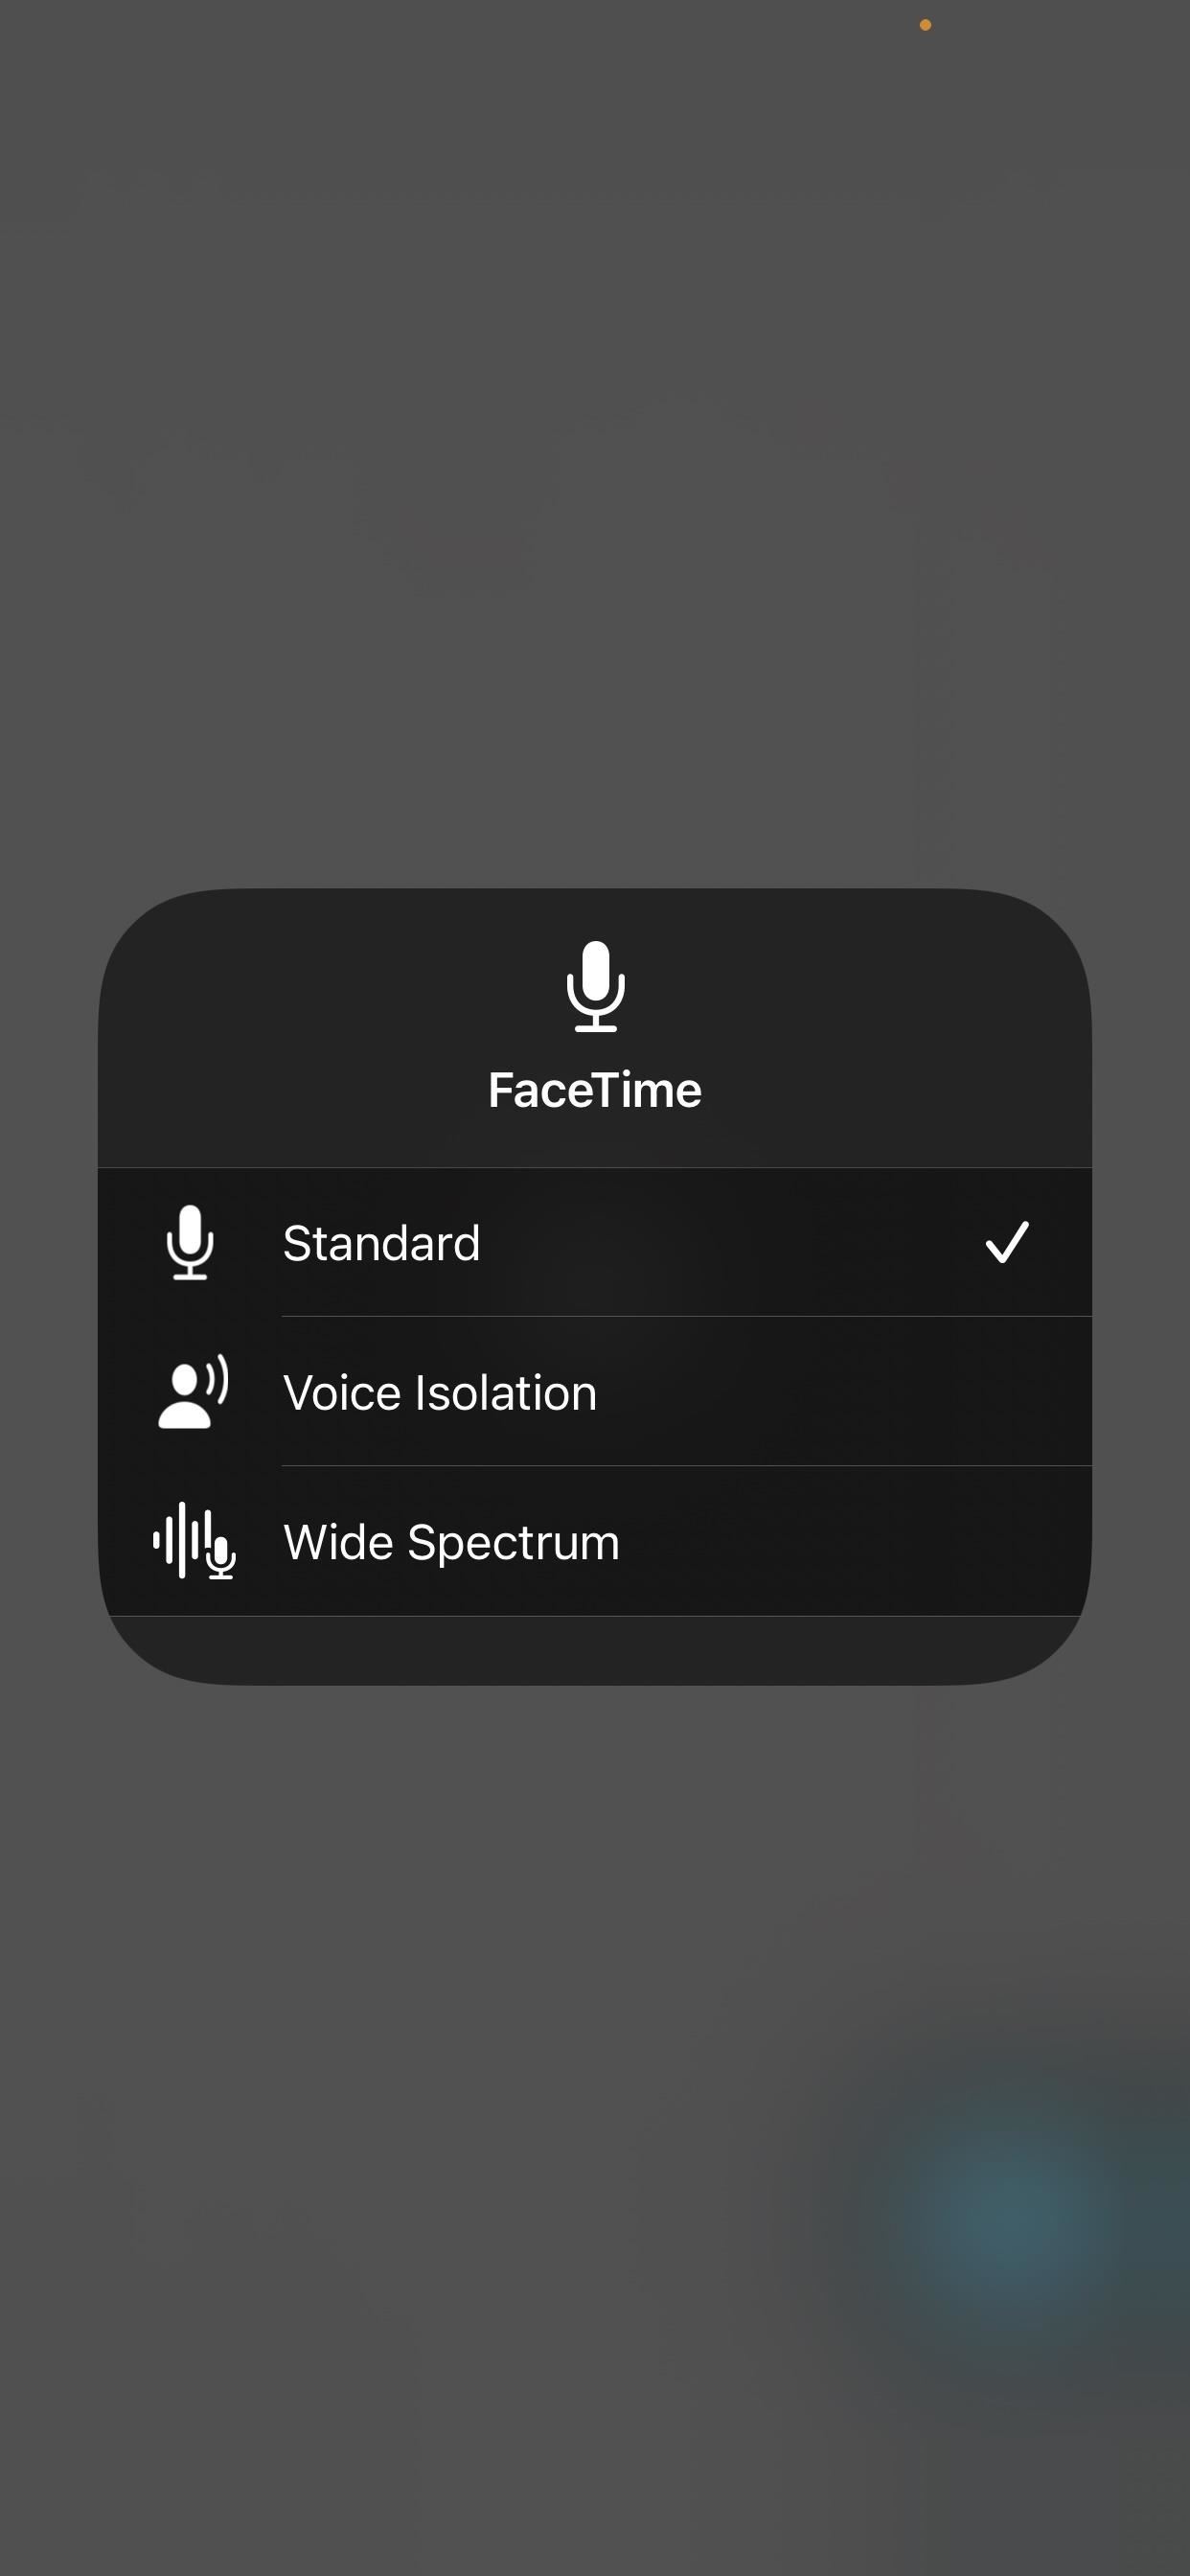 Use los efectos de micrófono ocultos de su iPhone para mejorar su audio en FaceTime, Zoom y otras aplicaciones de videollamadas